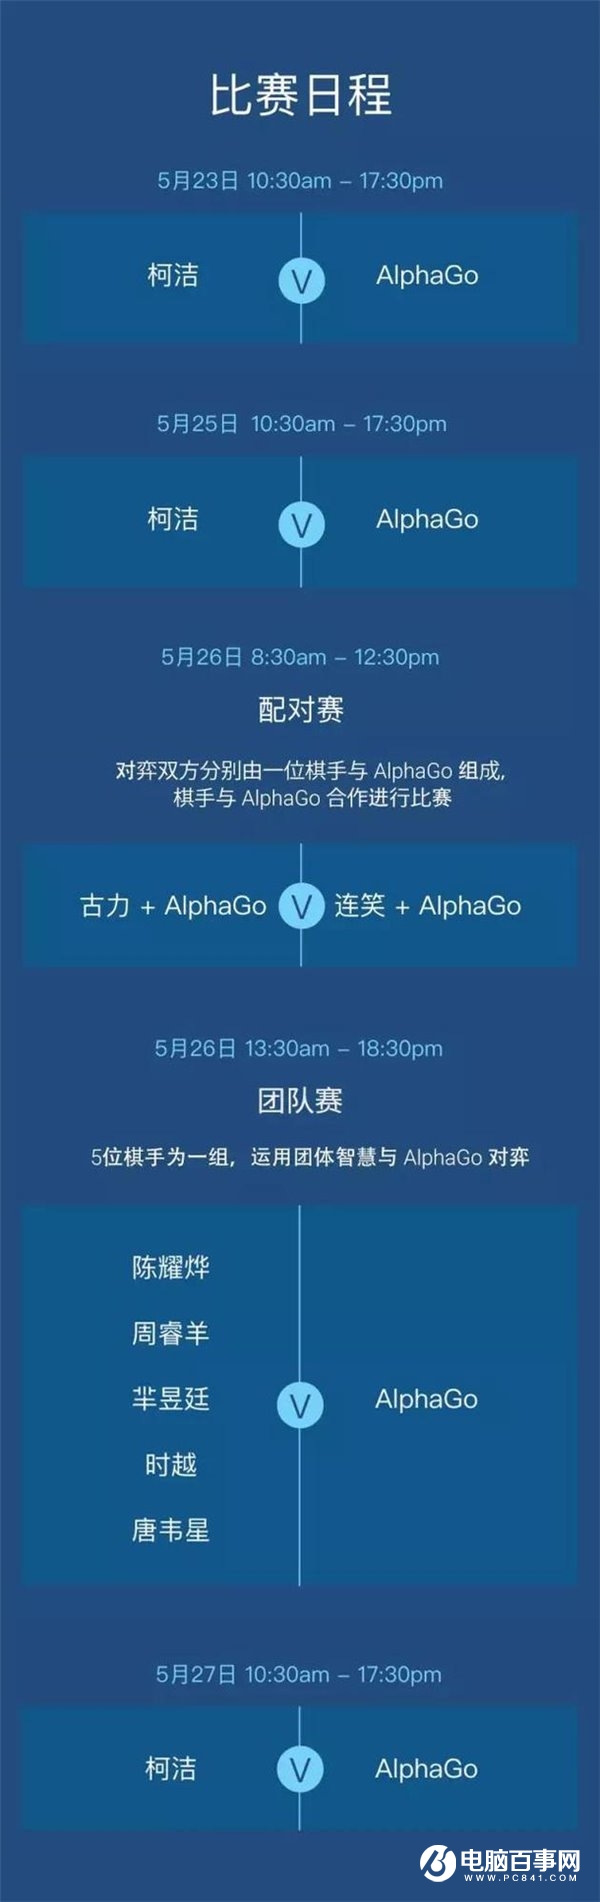 柯洁迎战AlphaGo赛程有哪些 柯洁迎战AlphaGo完整赛程详情